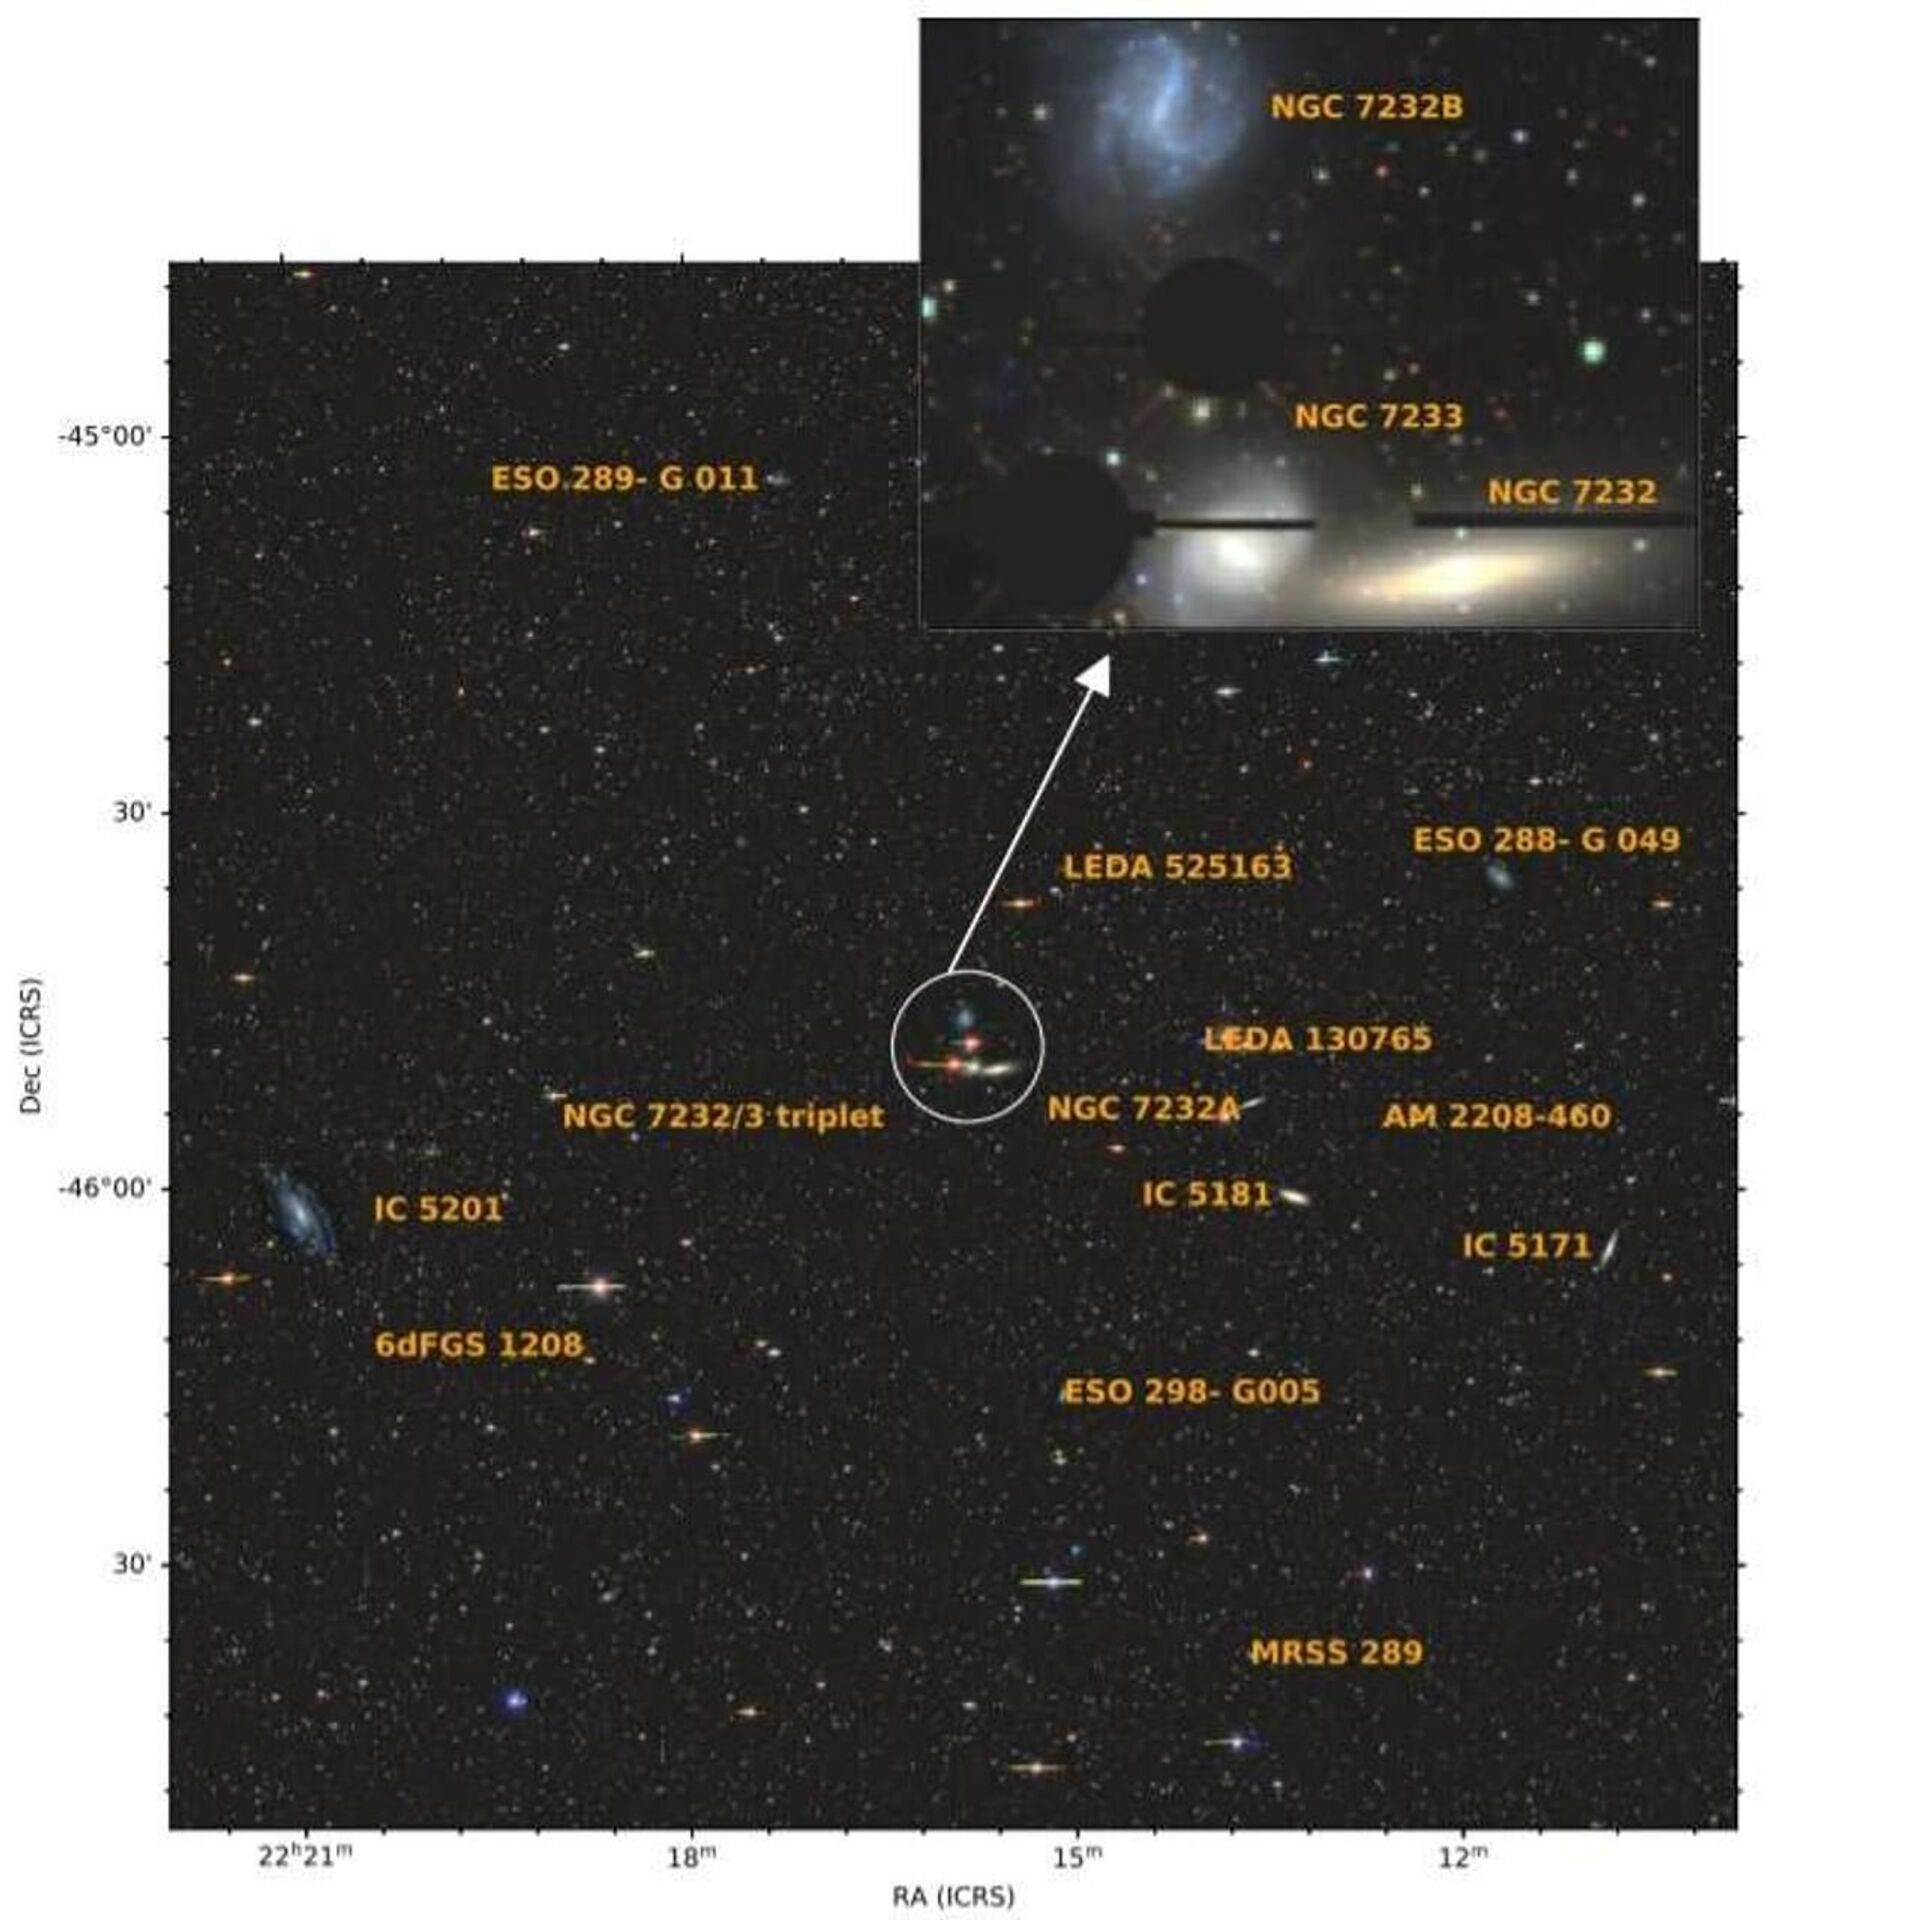 Astrônomos encontram enormes 'destroços de galáxias' nas proximidades da Via Láctea (FOTO) - Sputnik Brasil, 1920, 03.06.2021